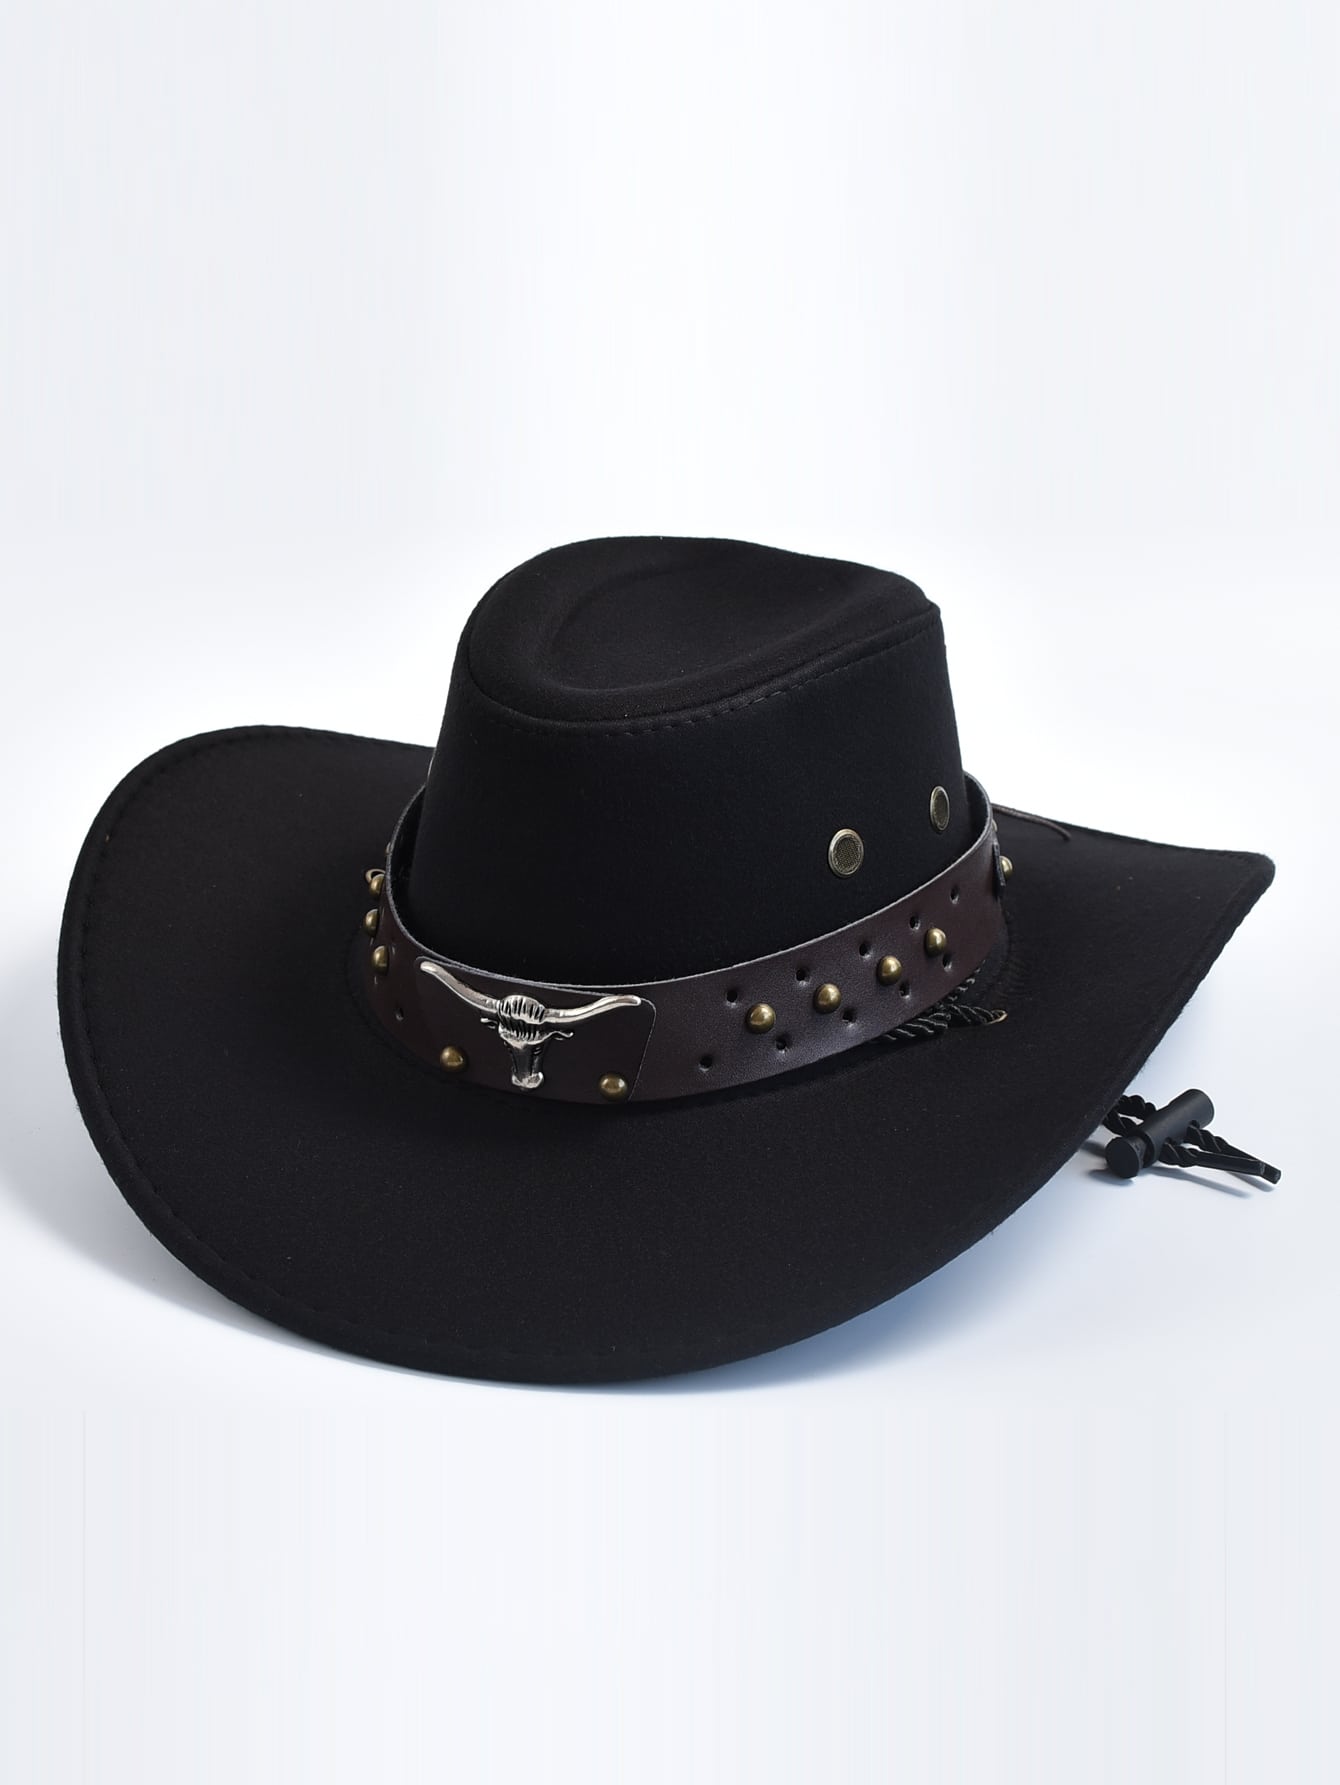 Голова коровы украшает западную ковбойскую шляпу для мужчин и женщин, черный ковбойская шляпа с перьями шляпа невесты ковбойская шляпа для девичника искусственная шляпа для невесты ковбойская шляпа для дискотеки